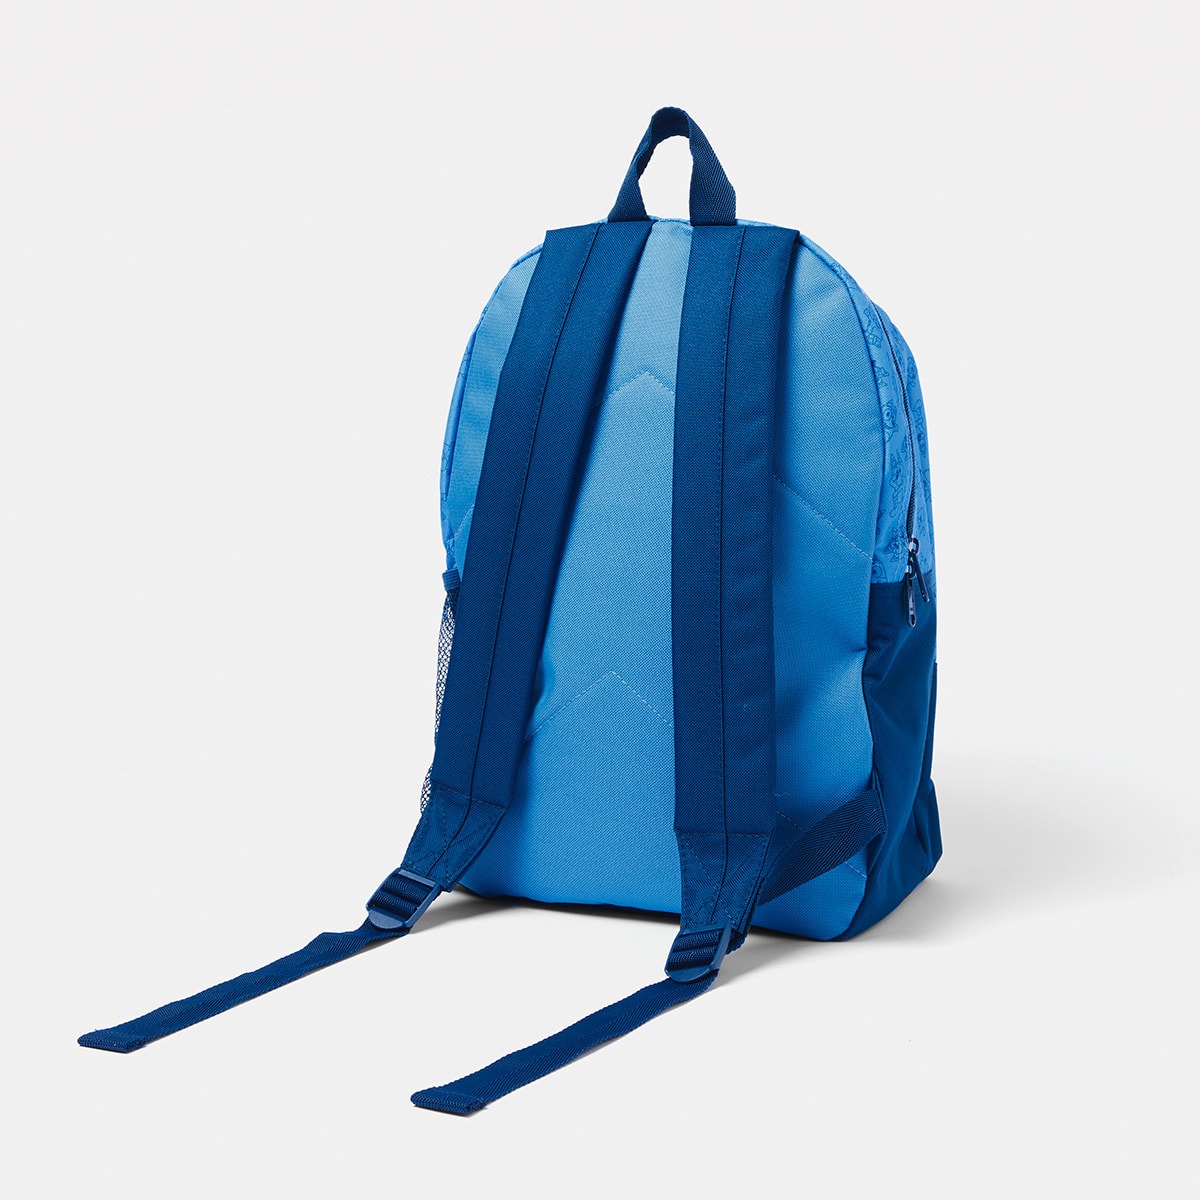 Bluey and Bingo Backpack - Kmart